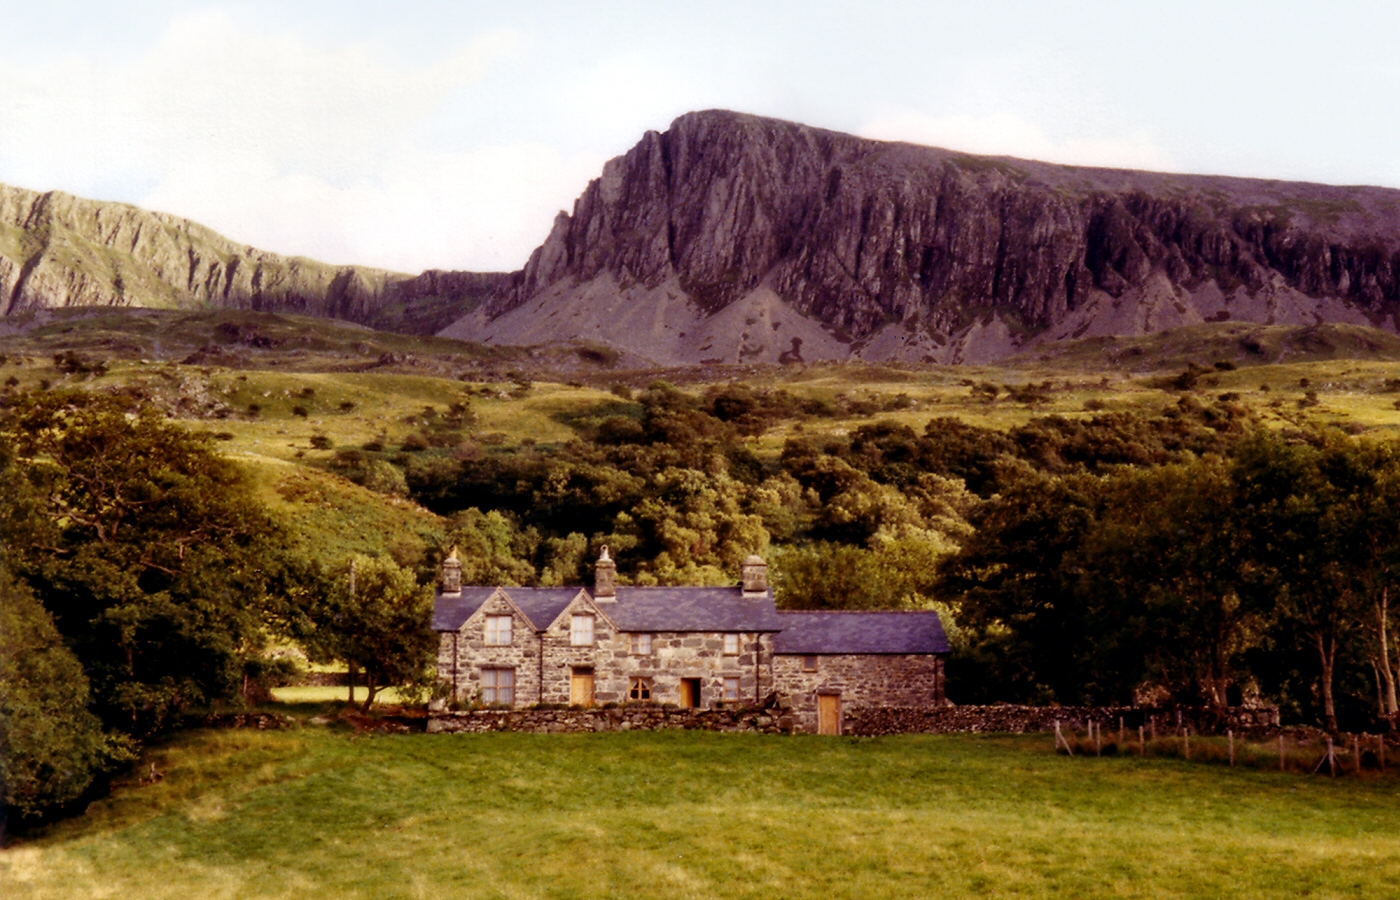 * Classic Cymru - Tynant farmhouse nestling under Cyfrwy - part of the Cadair Idris range (by AJW) *